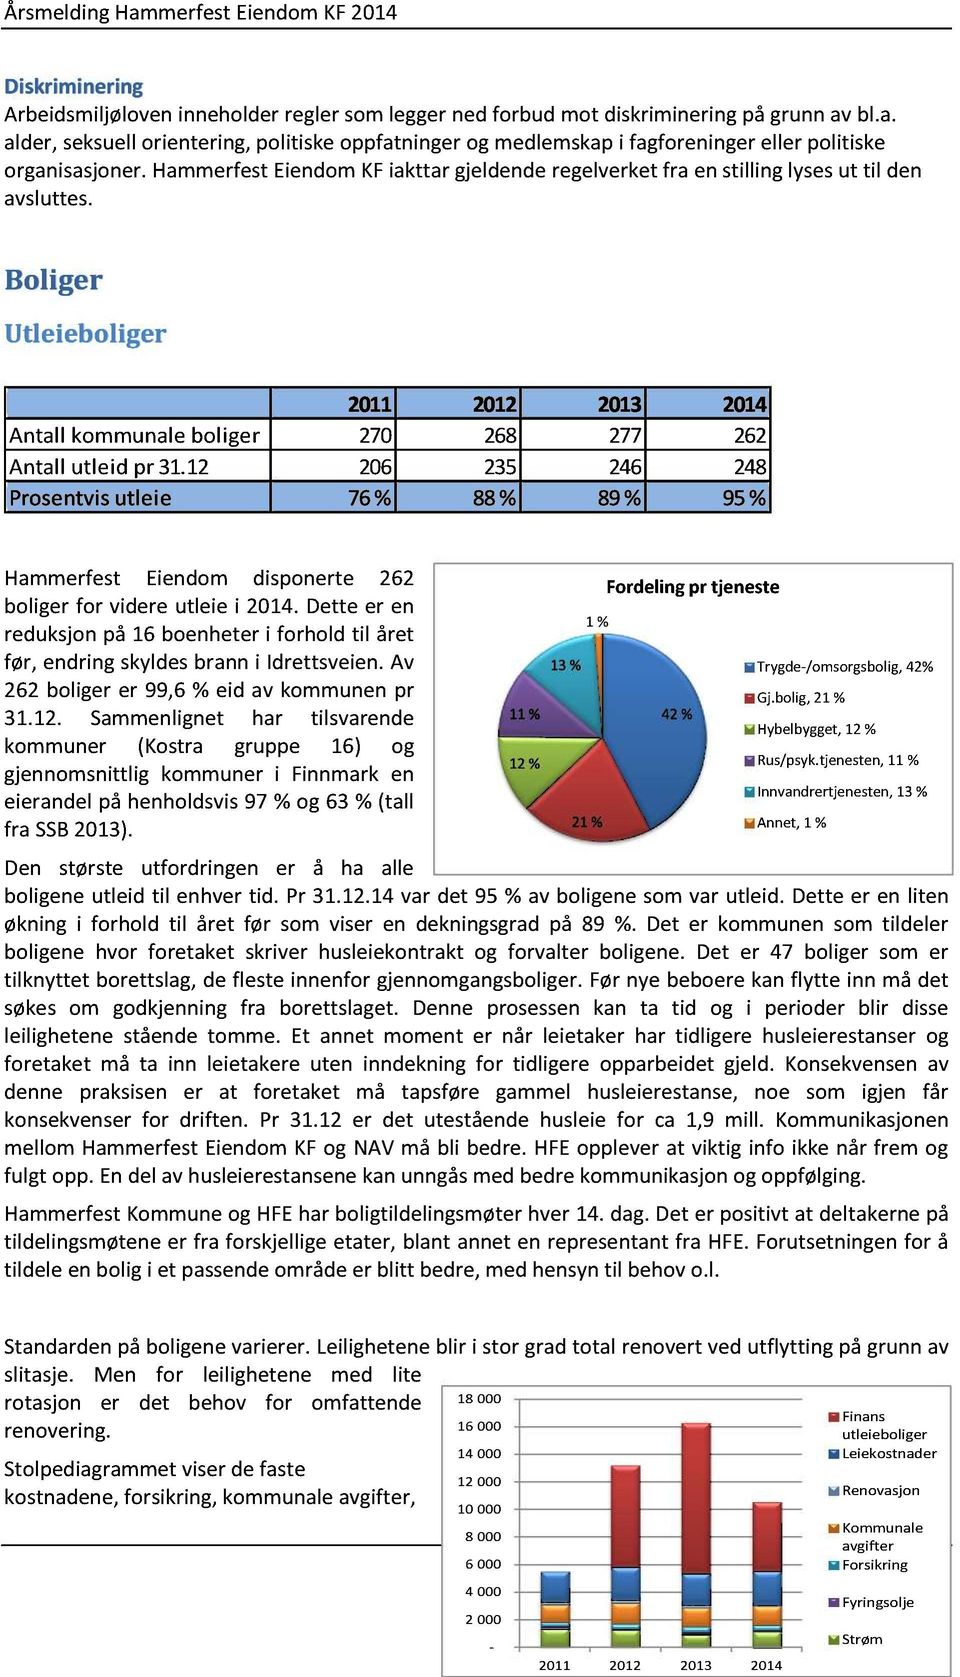 12 206 235 246 248 Prosentvisutleie 76% 88% 89% 95% Hammerfest Eiendom disponerte 262 boliger for videre utleie i 2014.